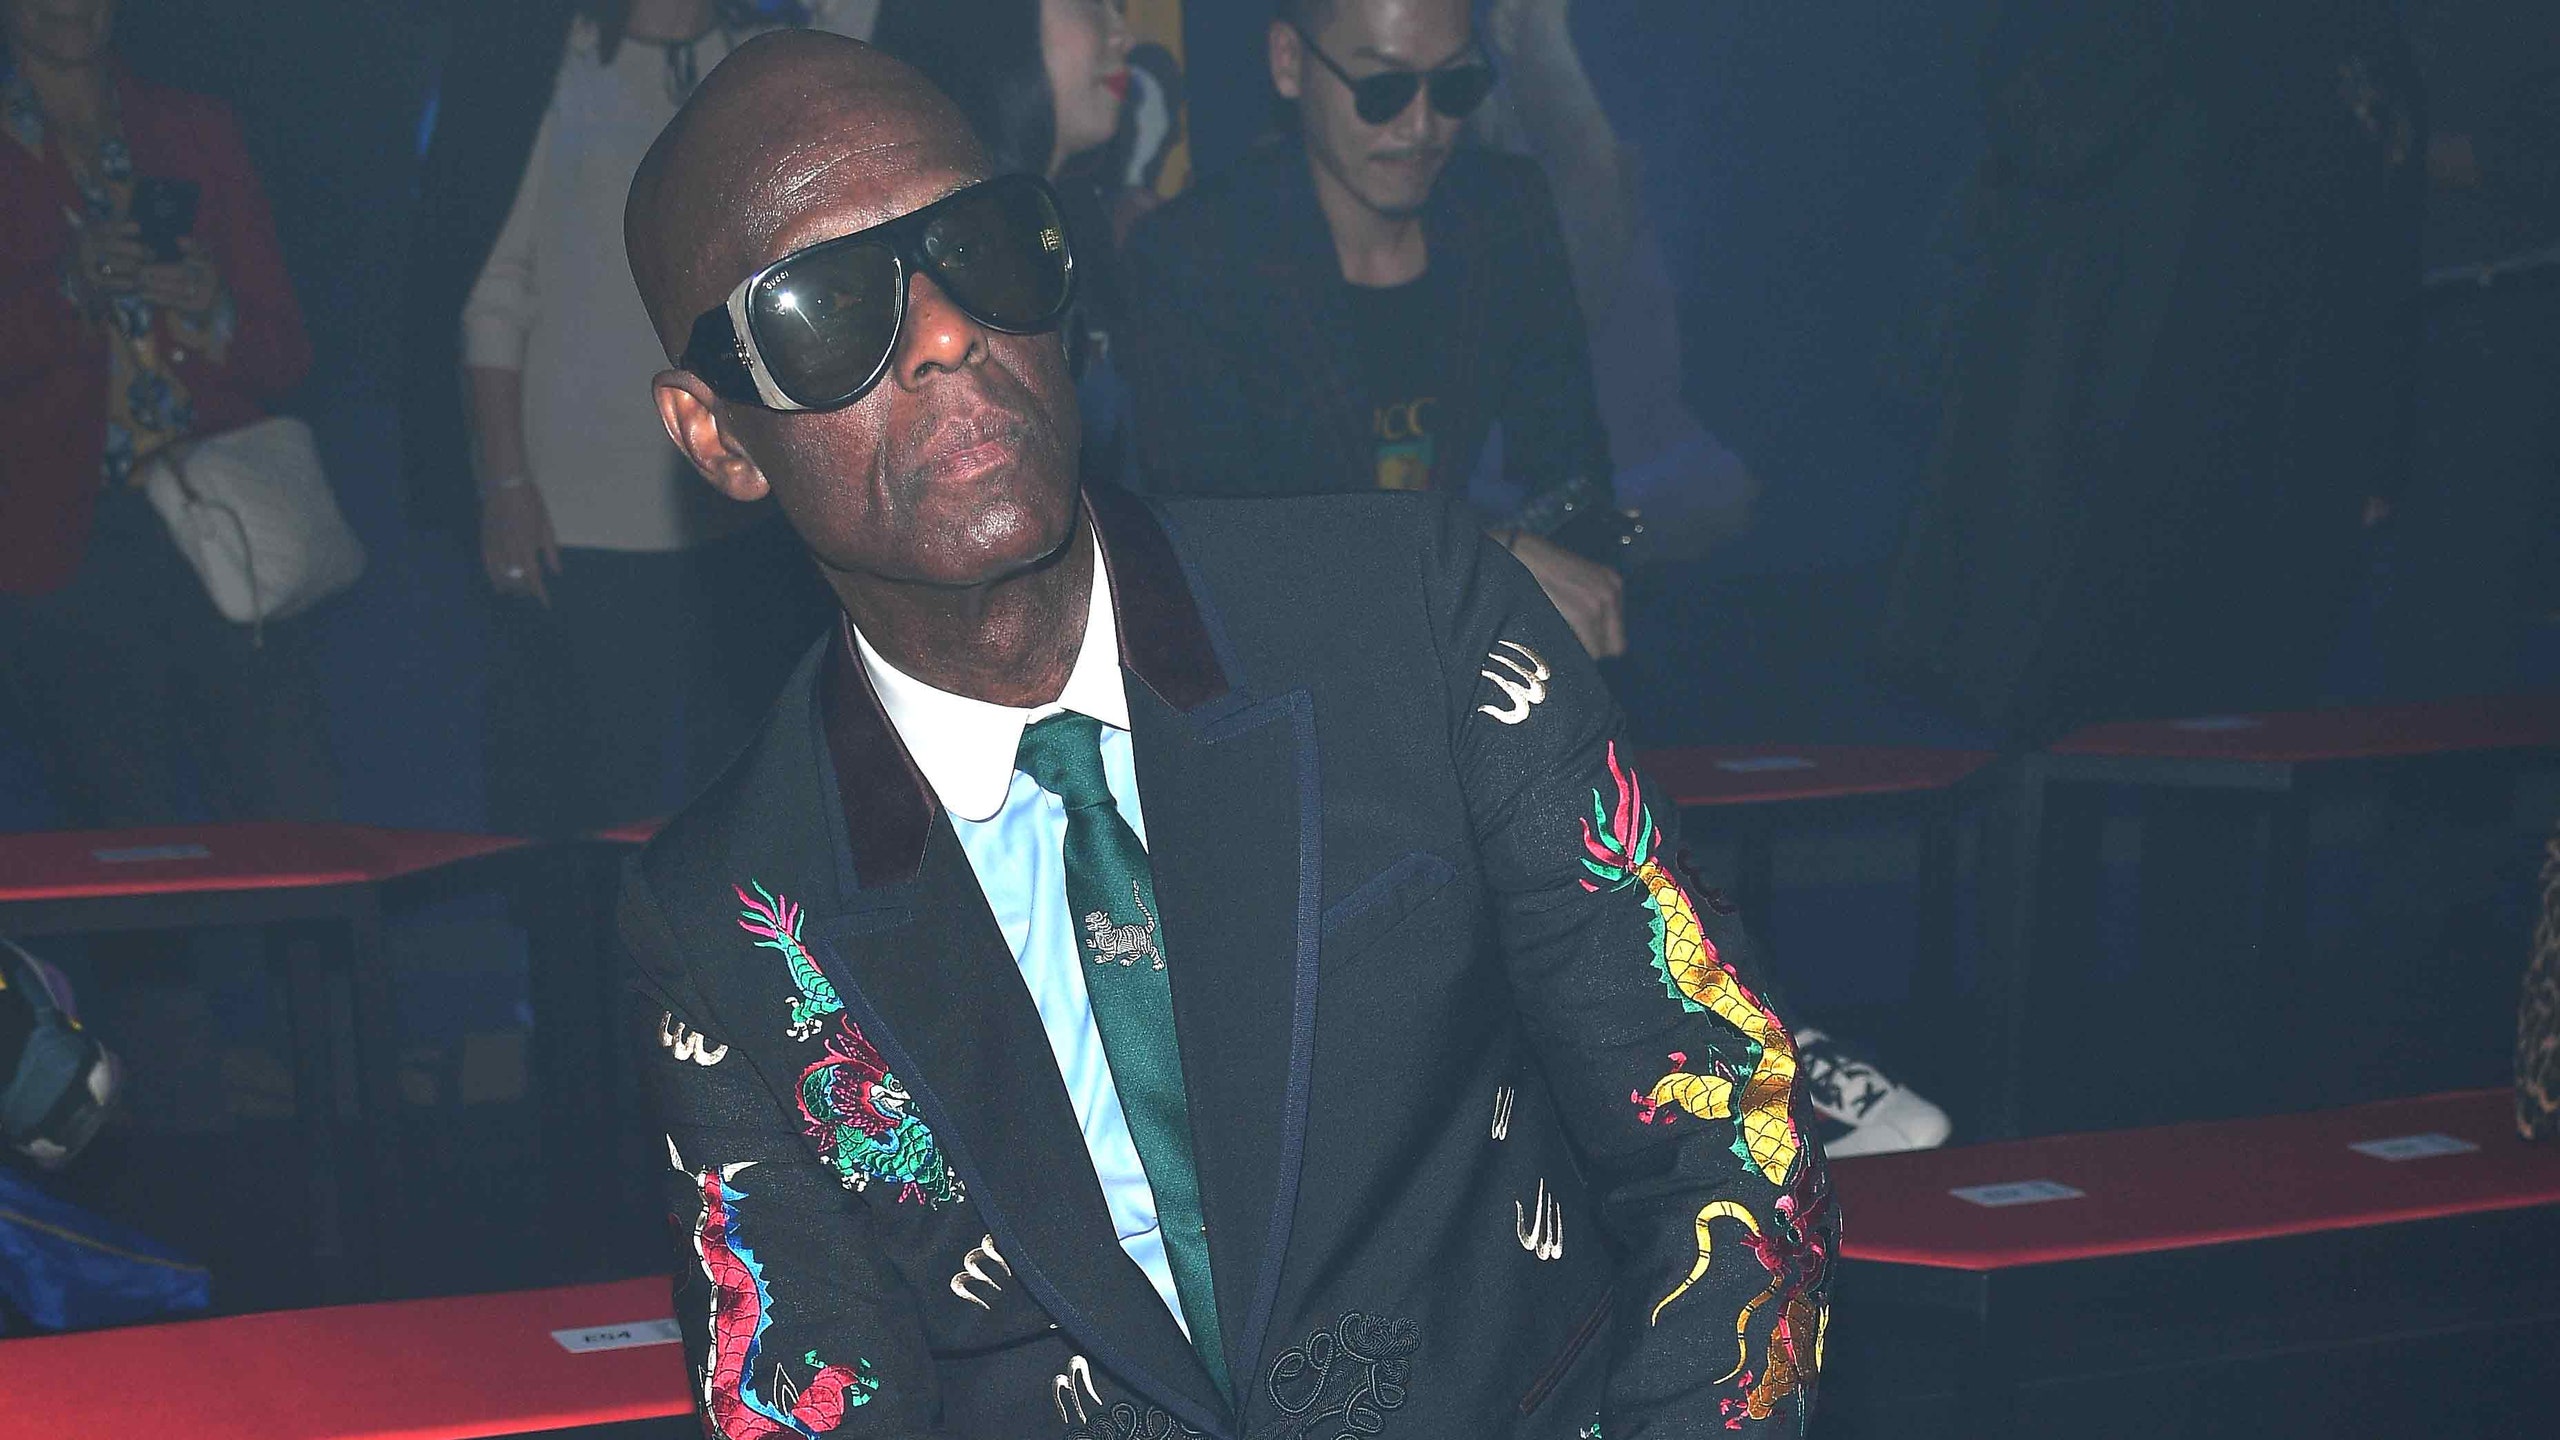 Дэппер Дэн обвинил модный дом Gucci в расизме изза свитера с красными губами